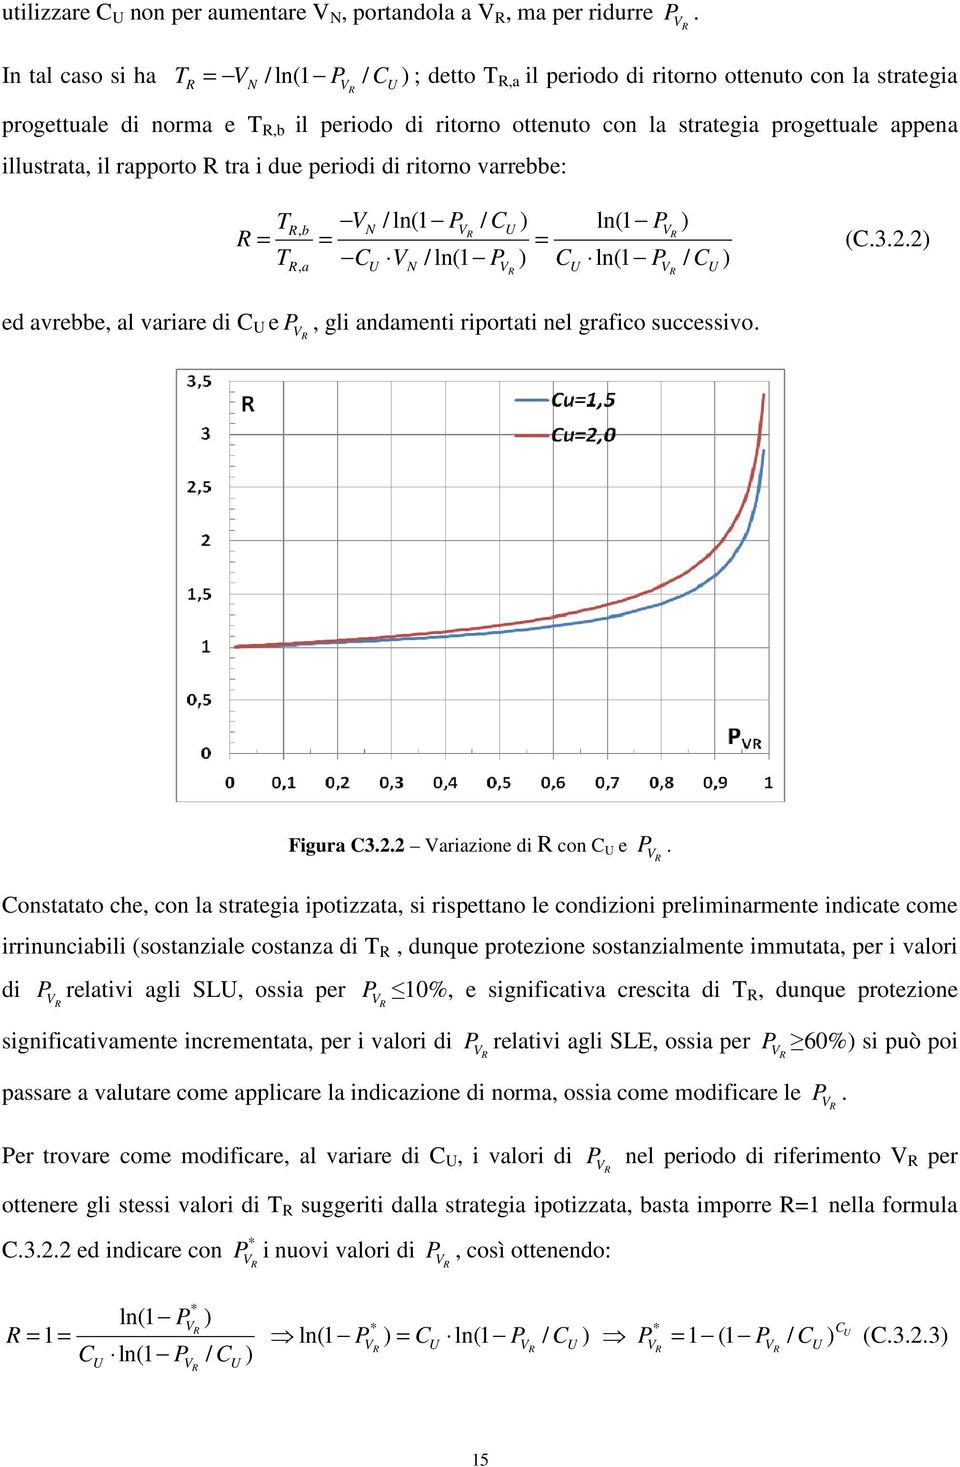 T V / ln(1 P / C ) ln(1 P ) R, b N VR U VR R = = = T R, a C U V N P V C U P V C U / ln(1 ) ln(1 / ) R R (C.3.2.2) ed avrebbe, al variare di C U e P, gli andamenti riportati nel grafico successivo.